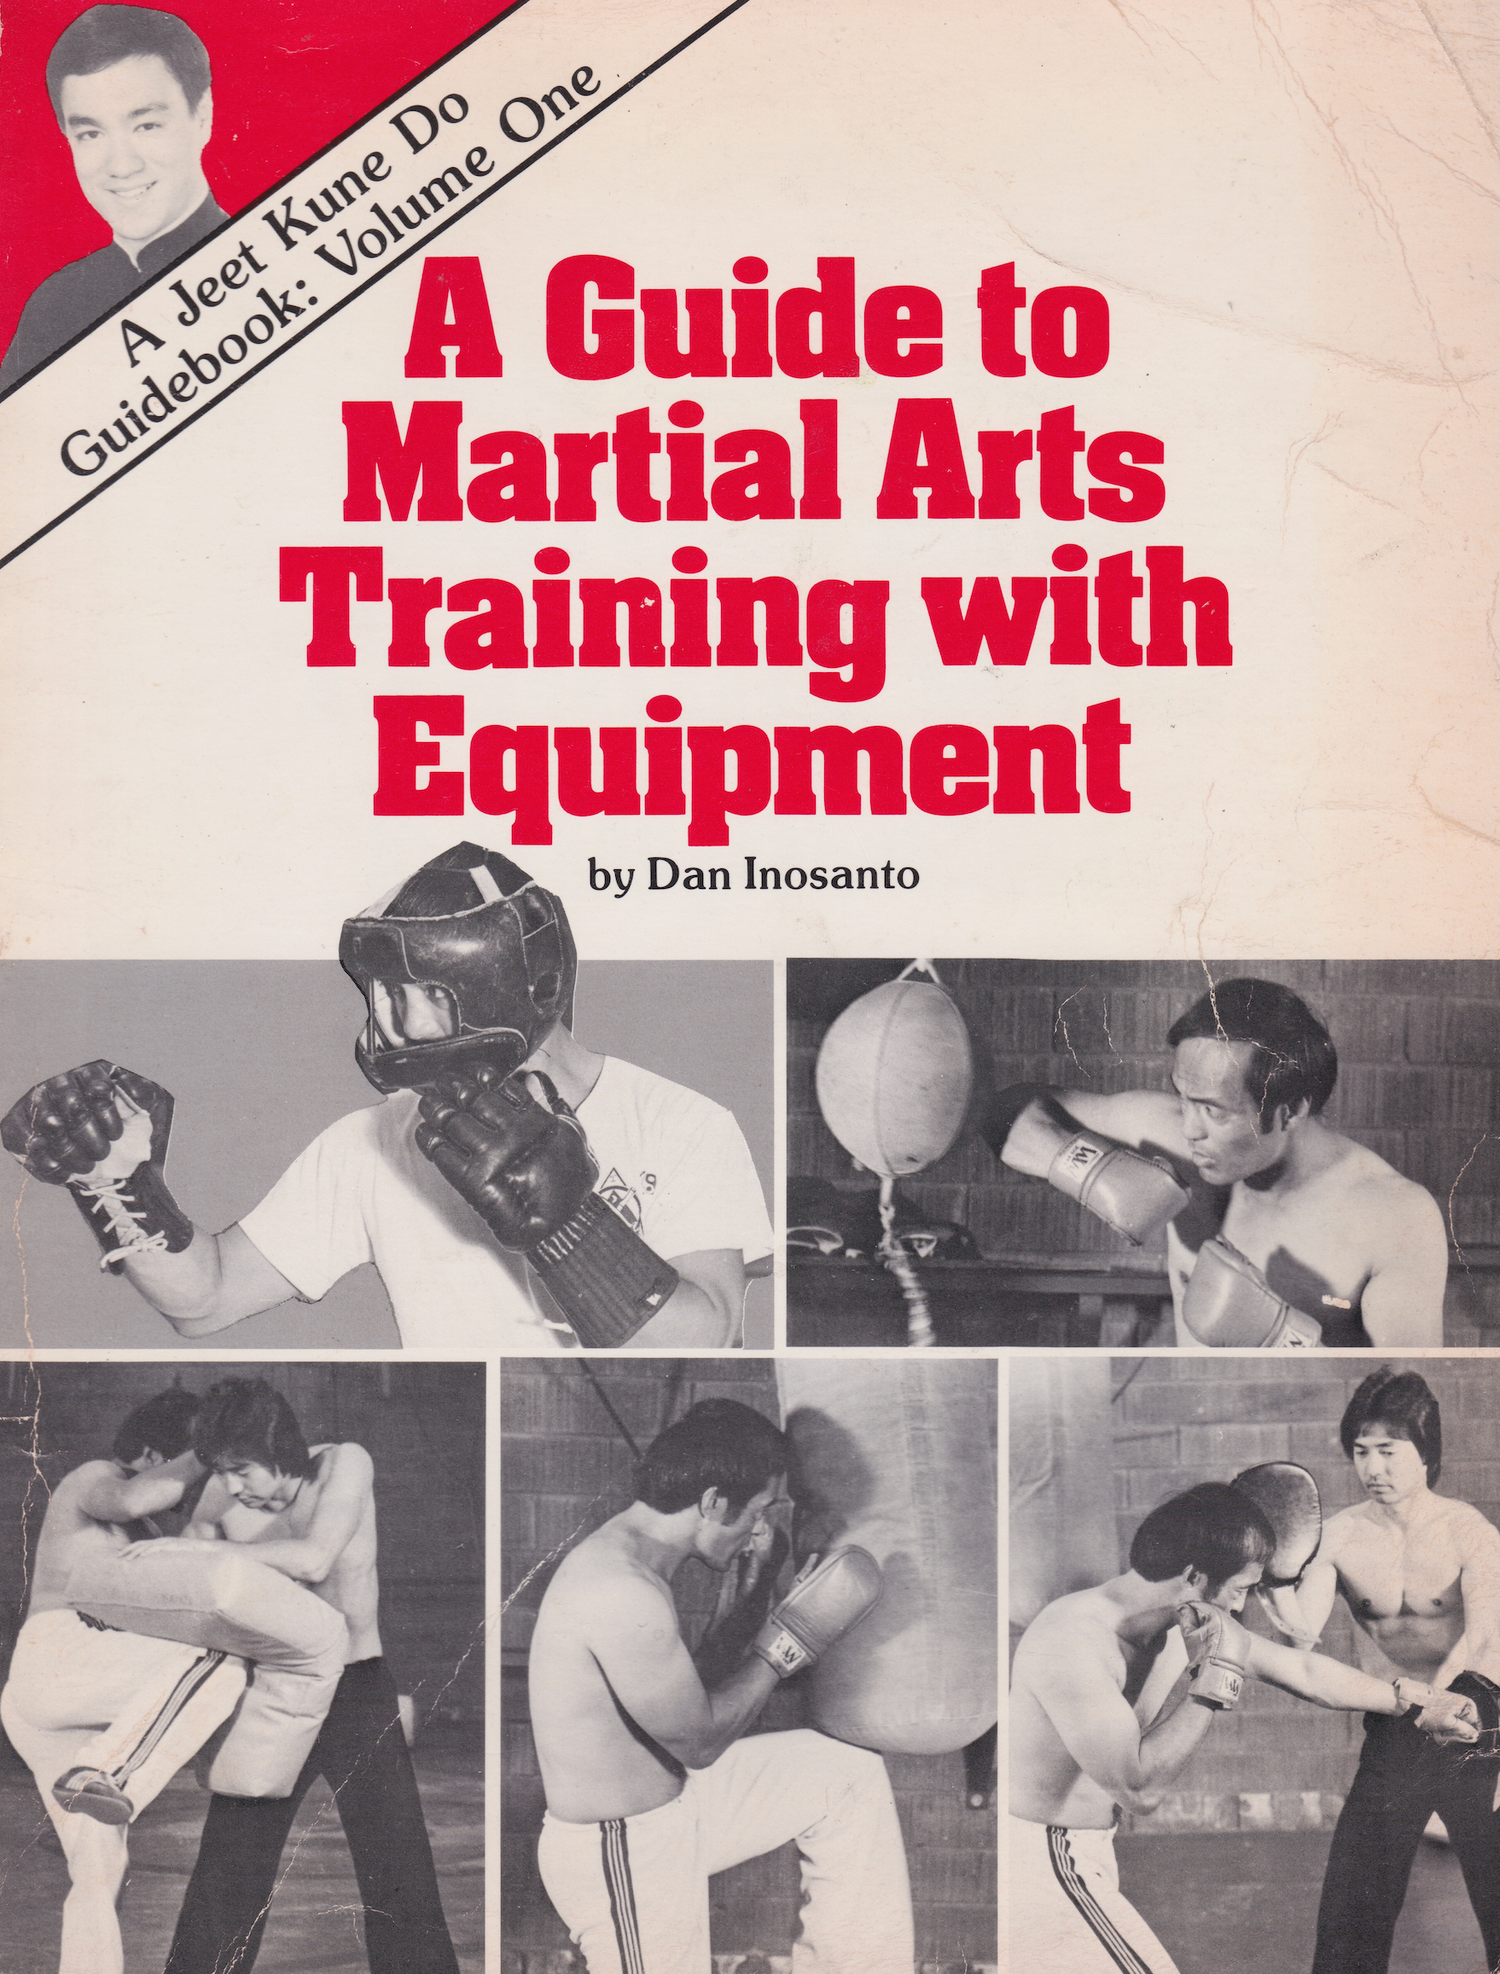 ジークンドー ガイドブック 1: 器具を使った武術トレーニングのガイド ダン イノサント著 (中古) 